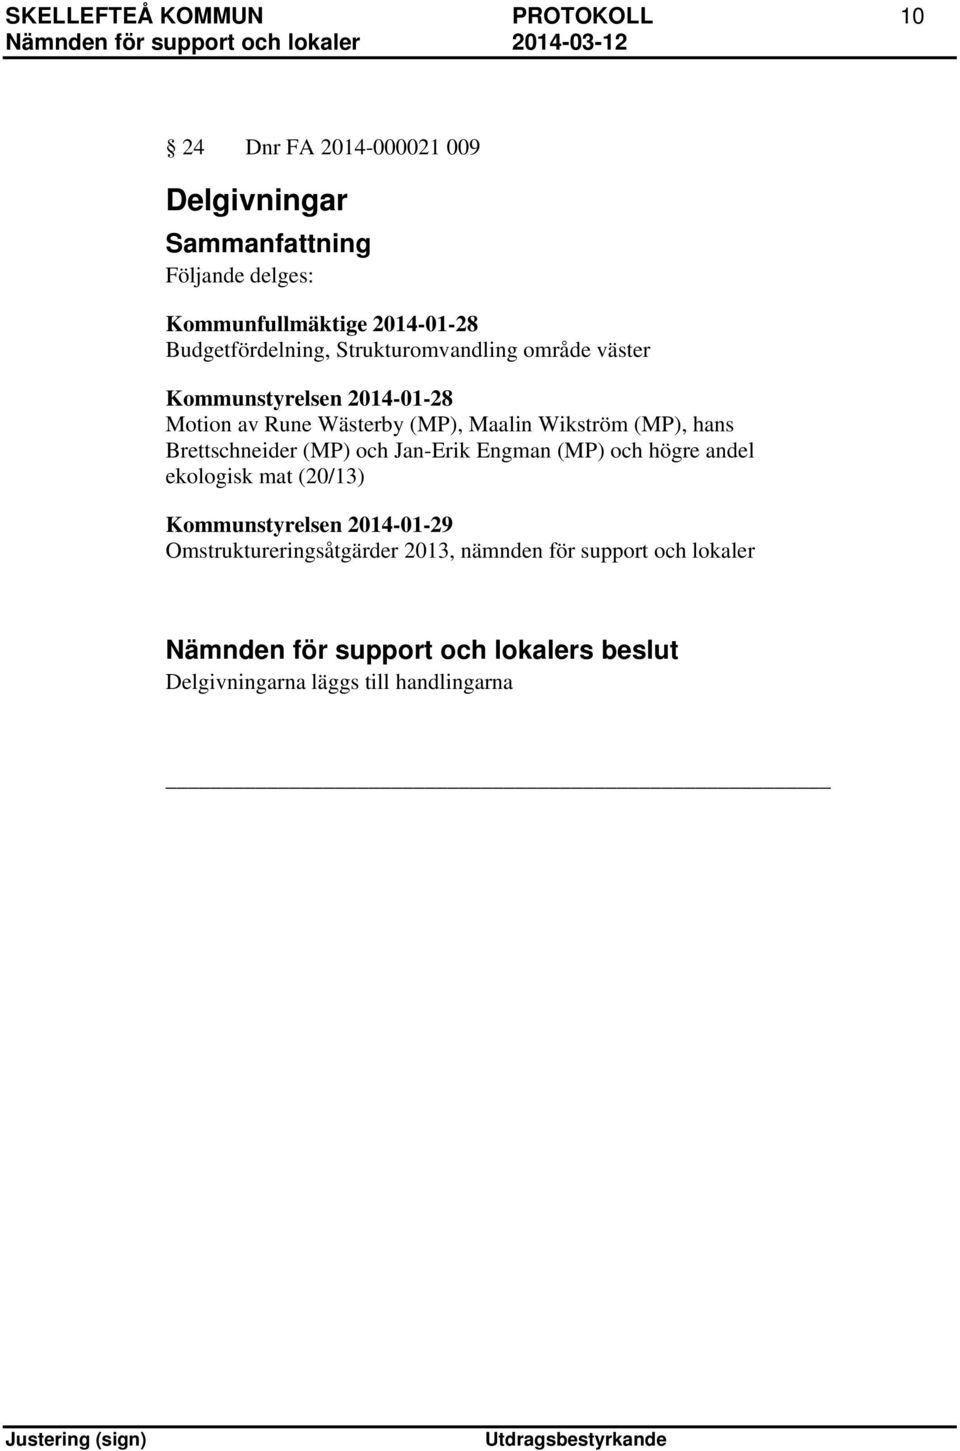 Wikström (MP), hans Brettschneider (MP) och Jan-Erik Engman (MP) och högre andel ekologisk mat (20/13)